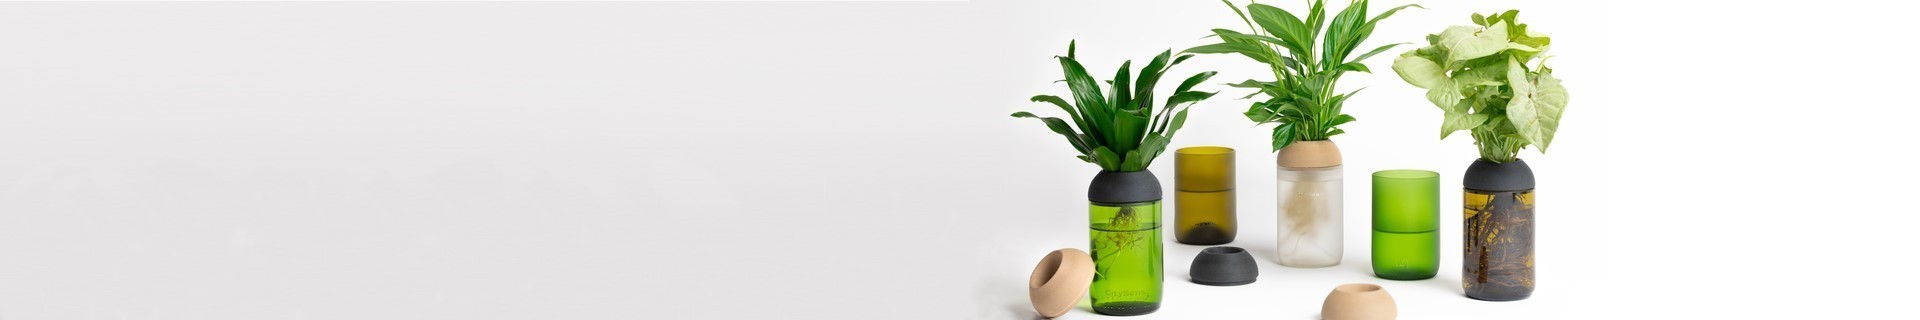 Vasi trasparenti da ufficio con piante | CitySens